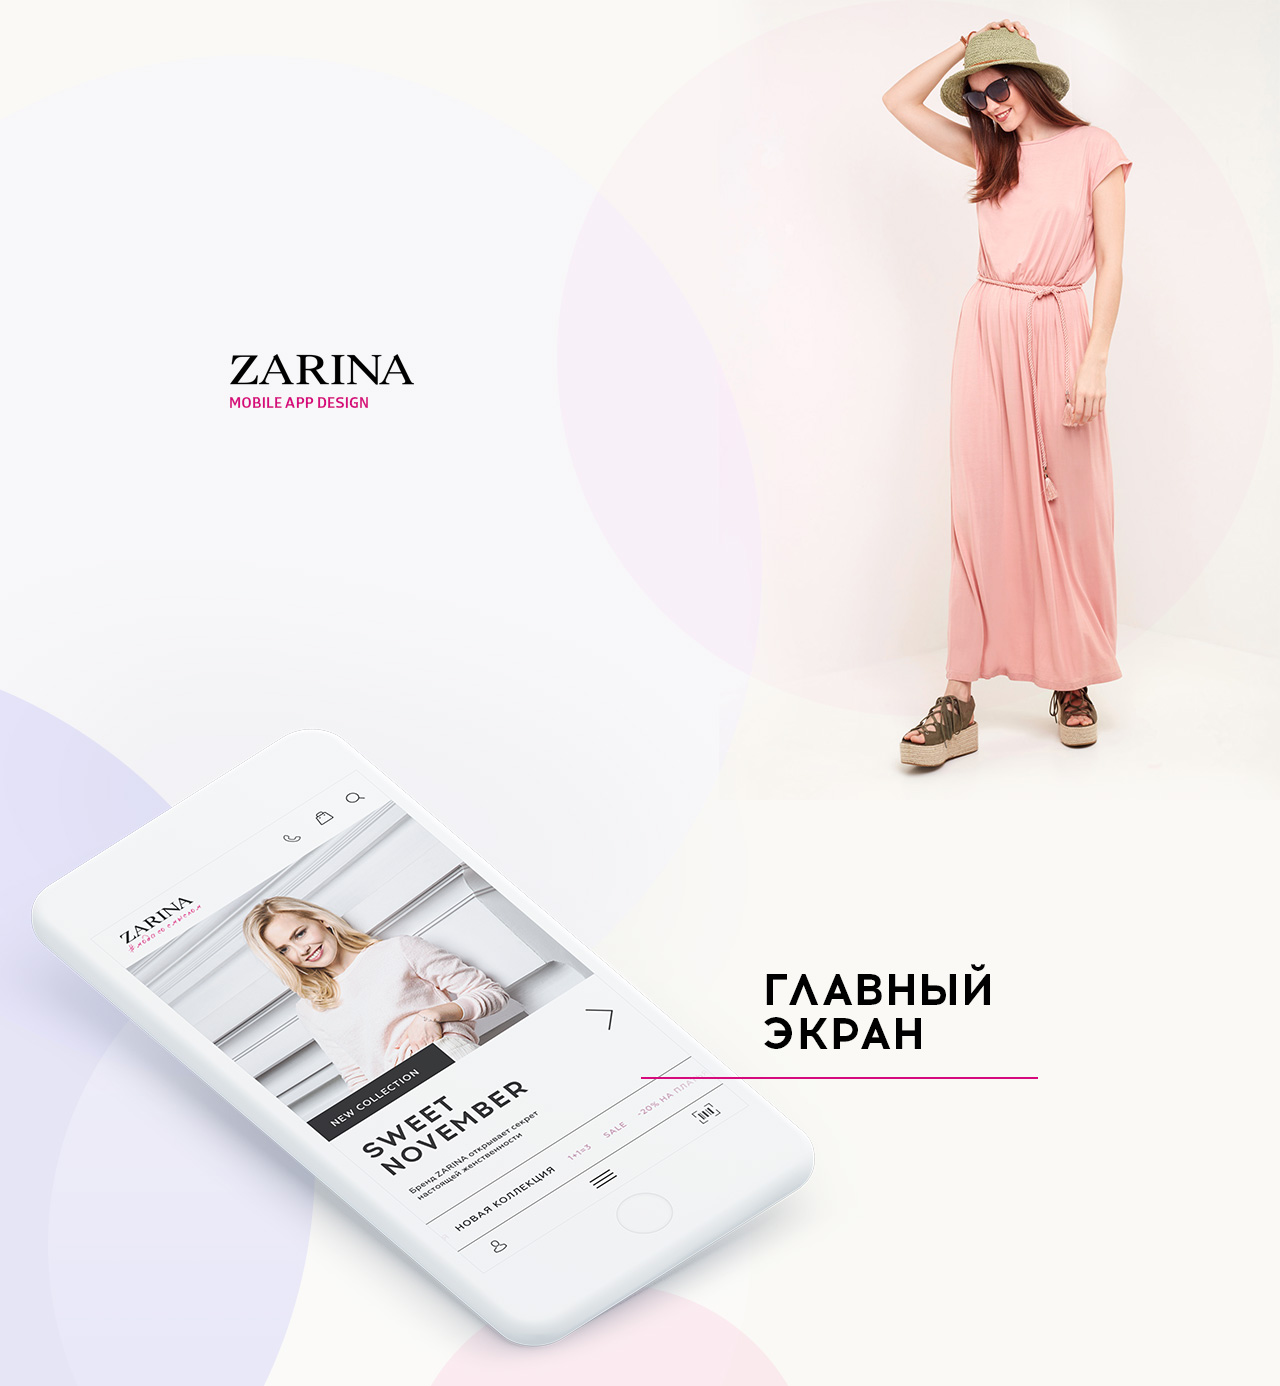 Зара Интернет Магазин Каталог Одежды Москва